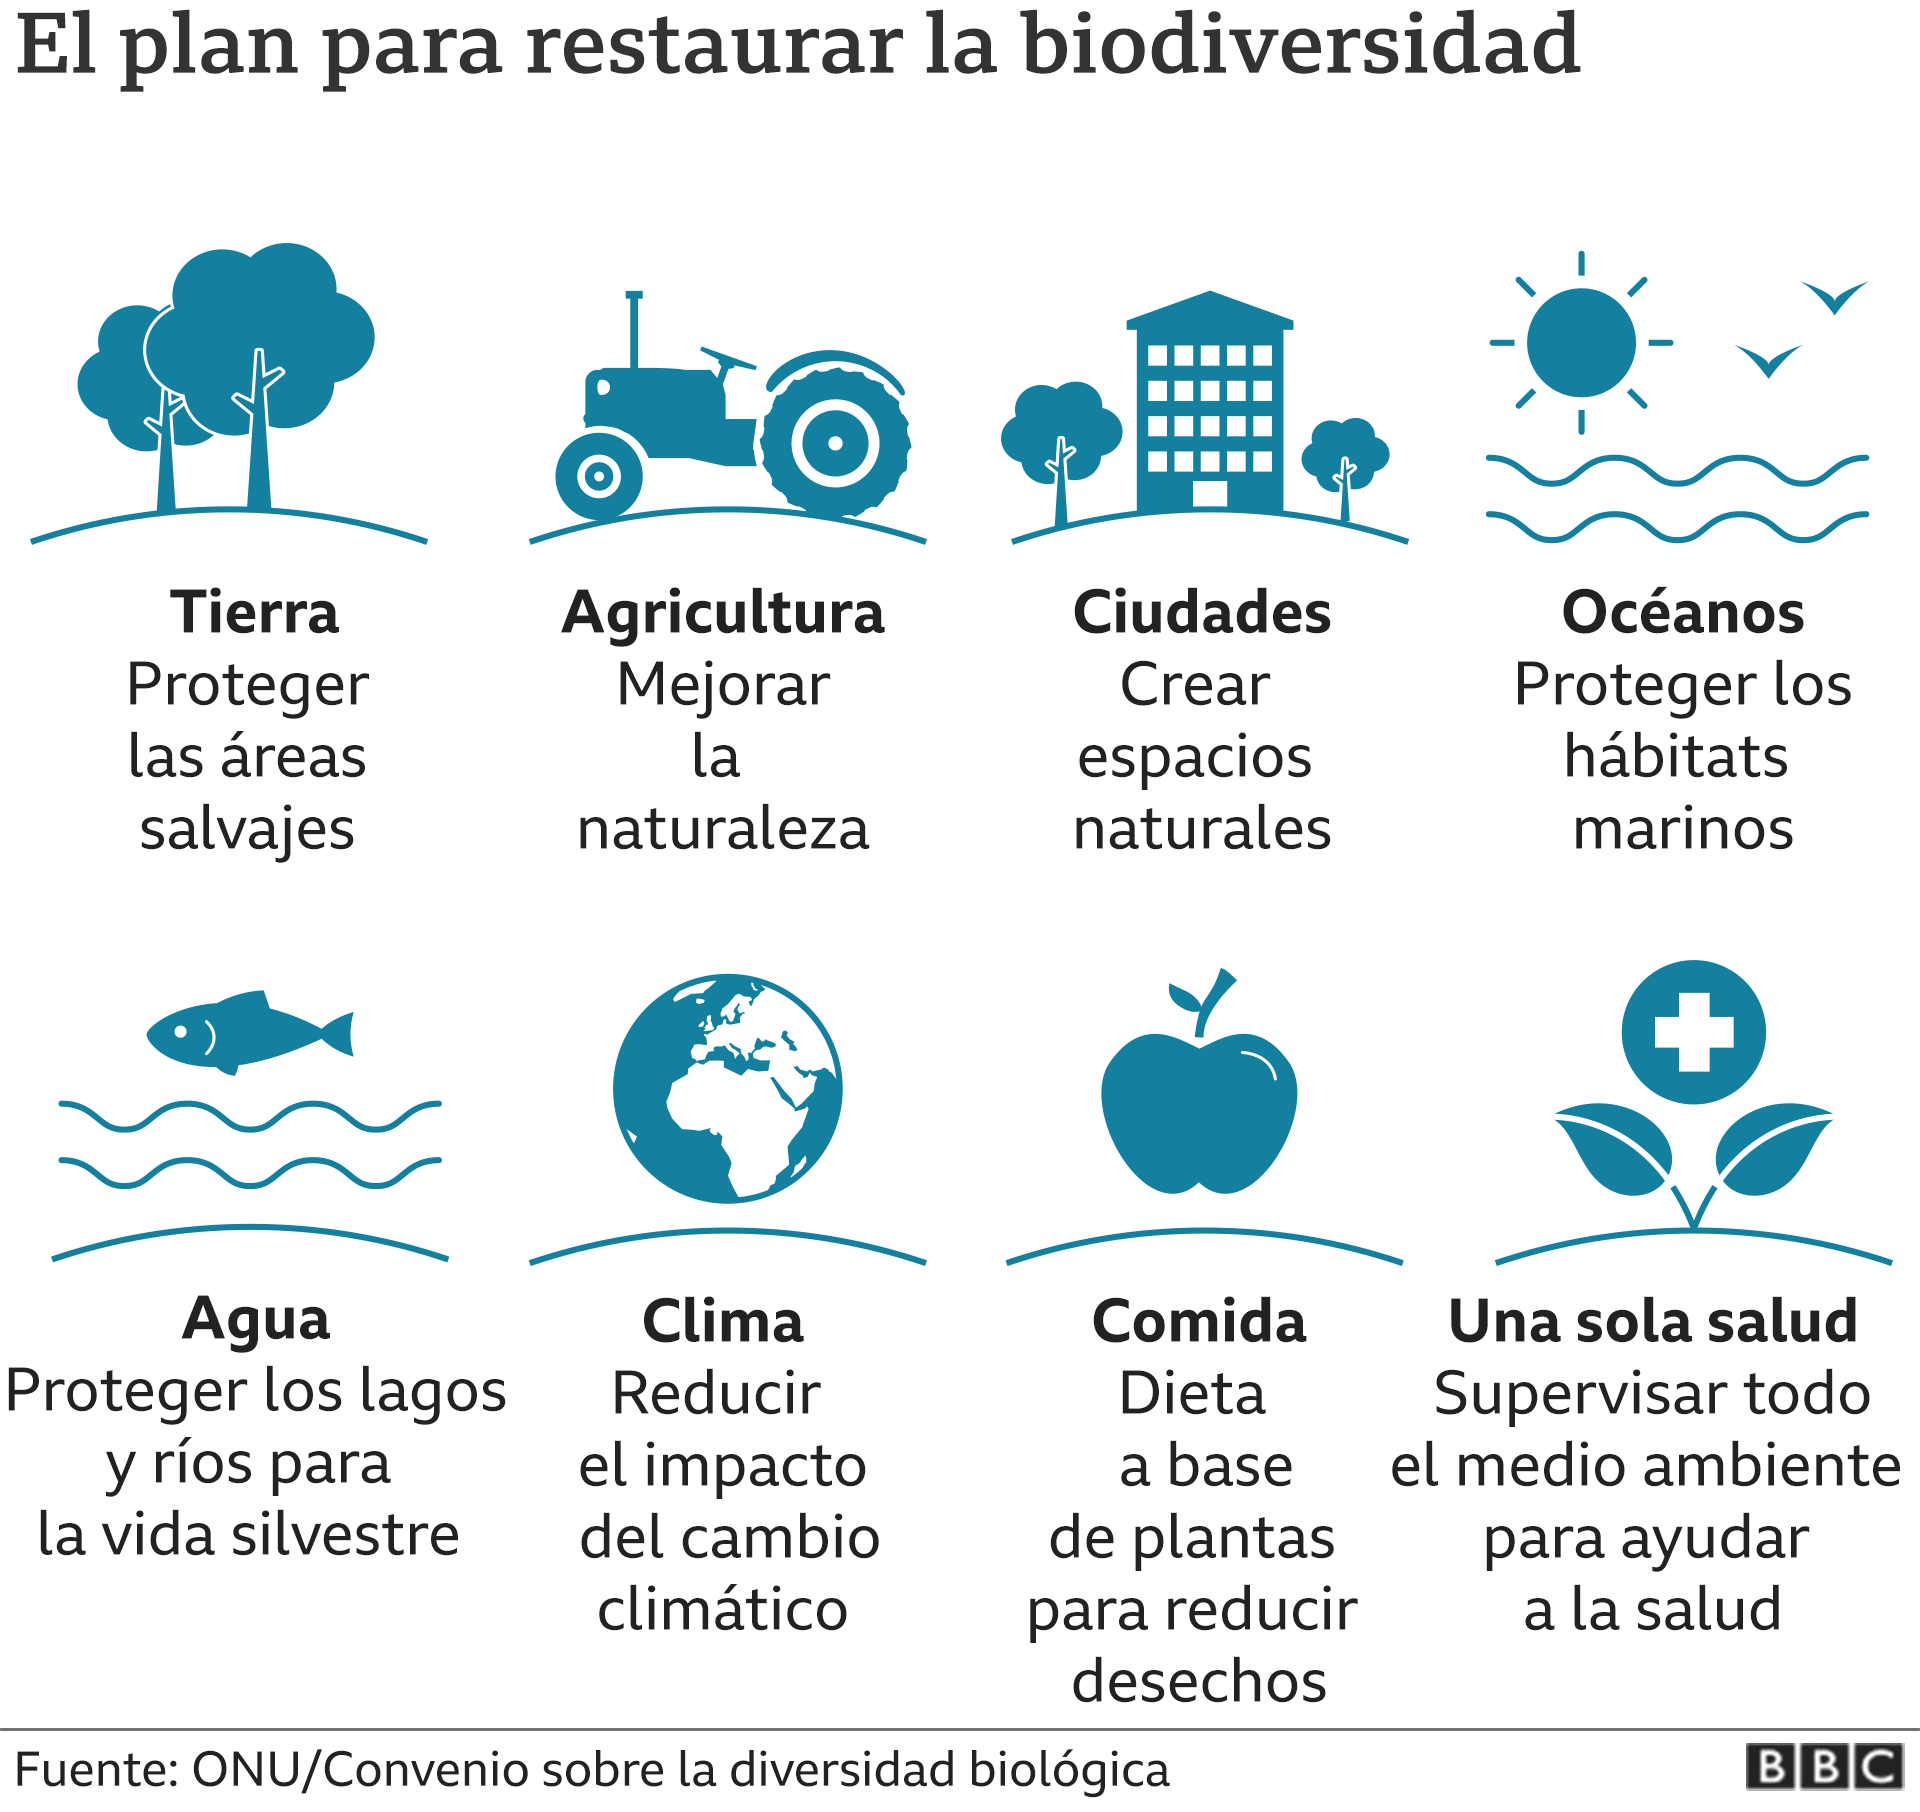 El plan para restaurar la biodiversidad.